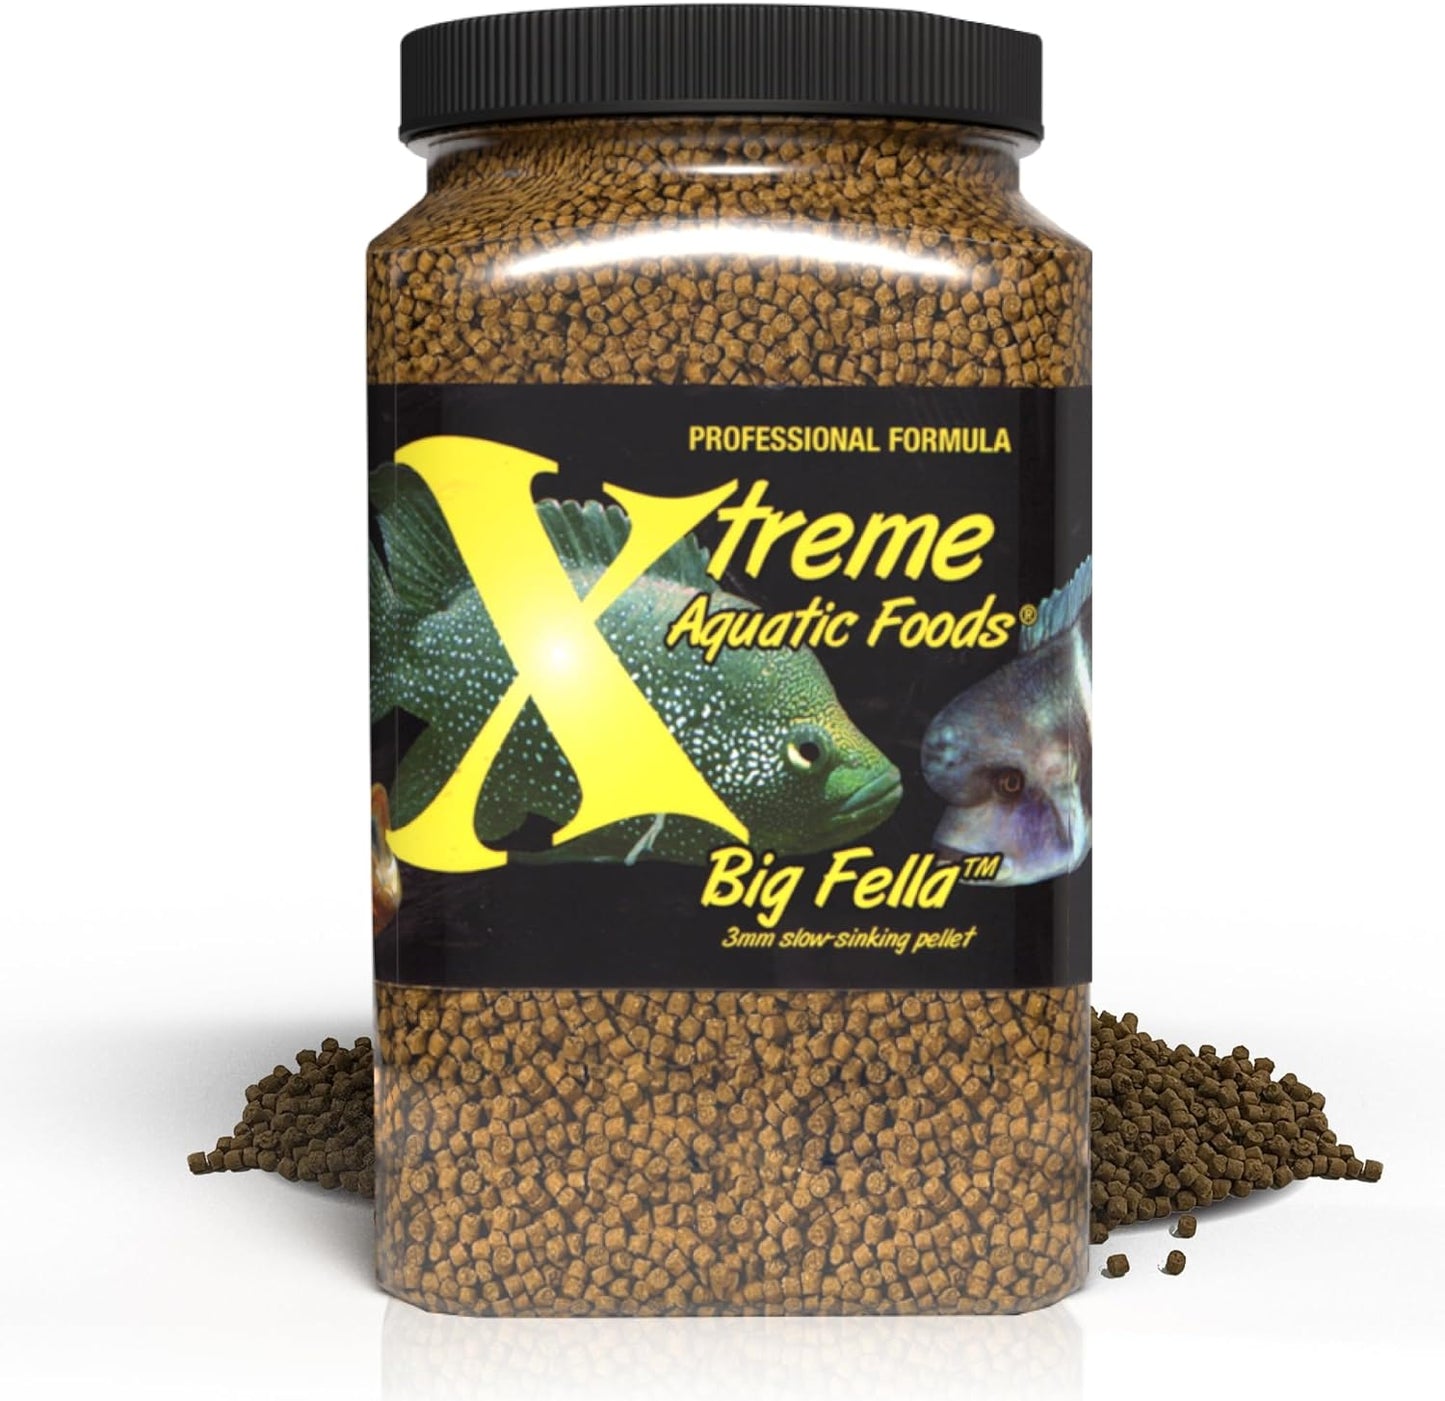 Xtreme Aquatic Foods Big Fella 3mm slow-sinking pellet 2.5 lbs (992g) 893427001466 Super Cichlids